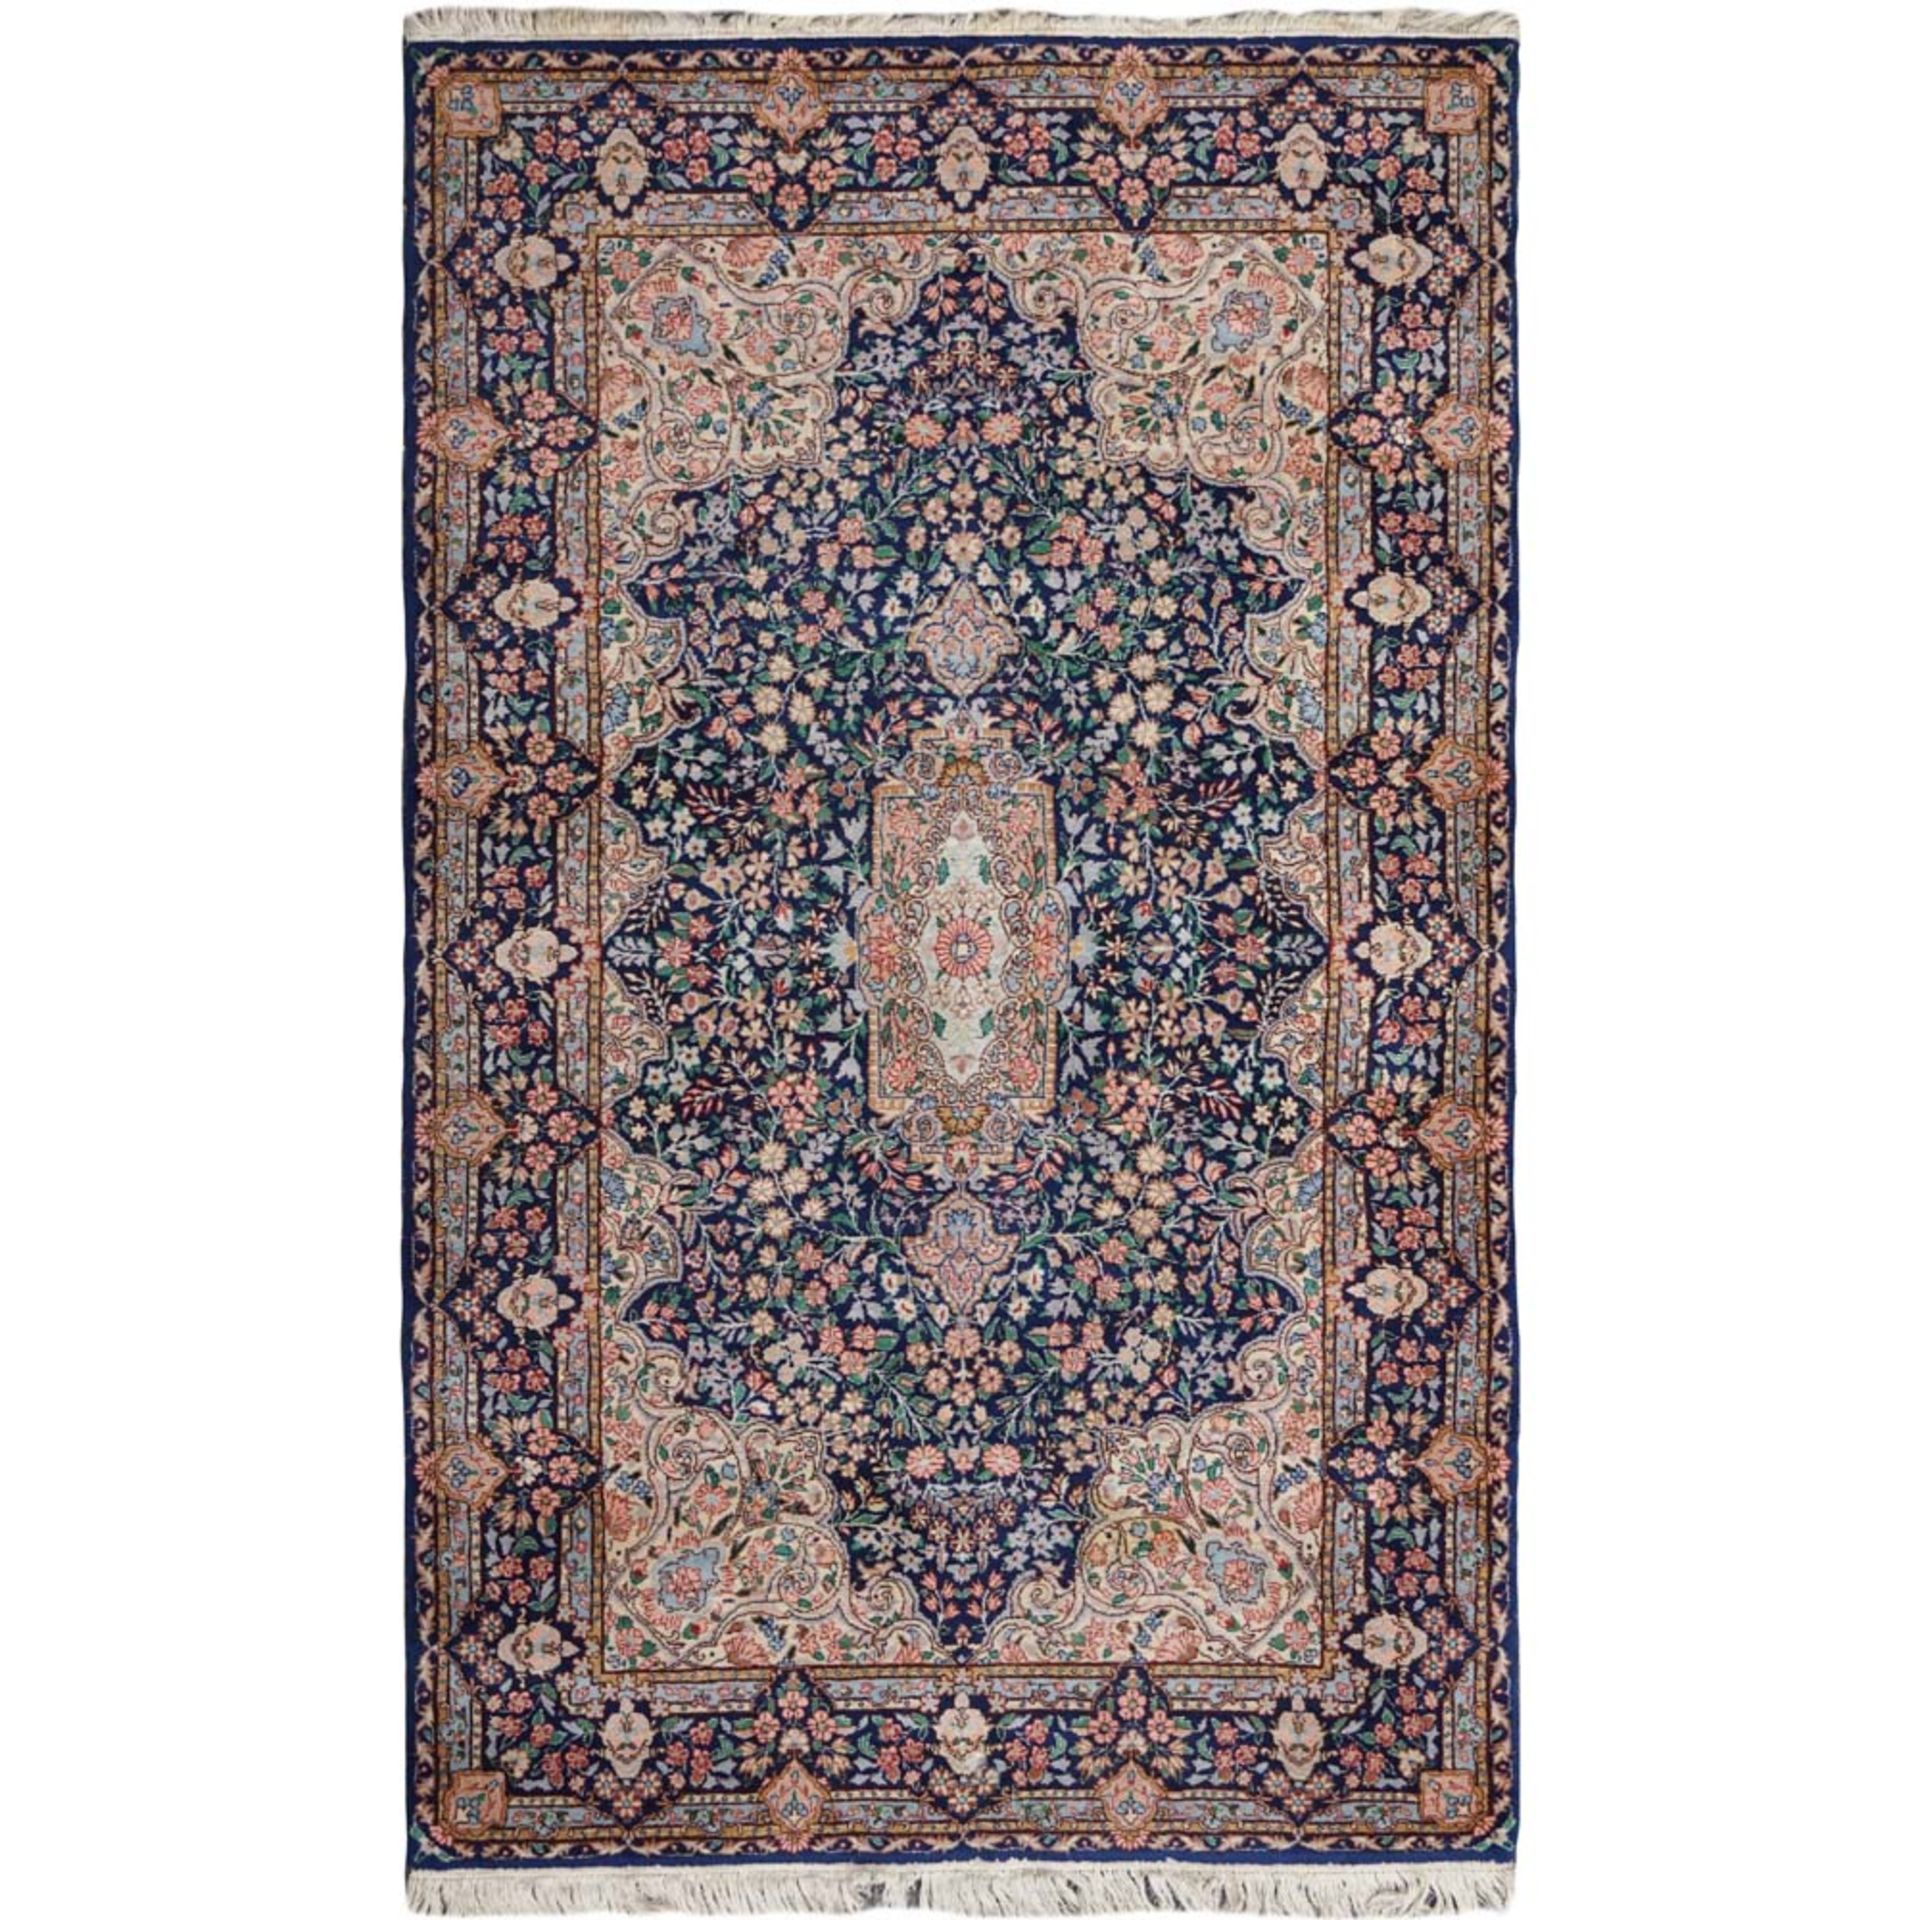 Oriental carpet 20th century 239x149 cm.